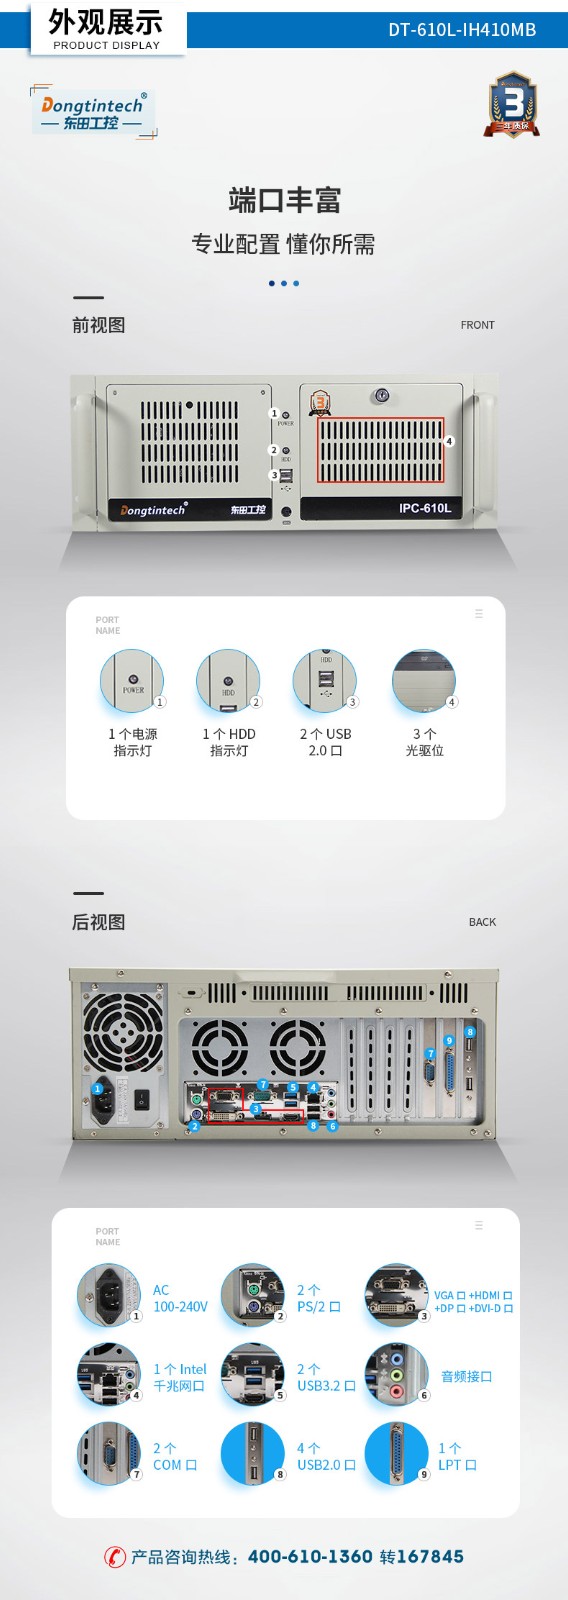 可扩展工控机,4pci槽工业电脑,DT-610L-IH410MB.jpg